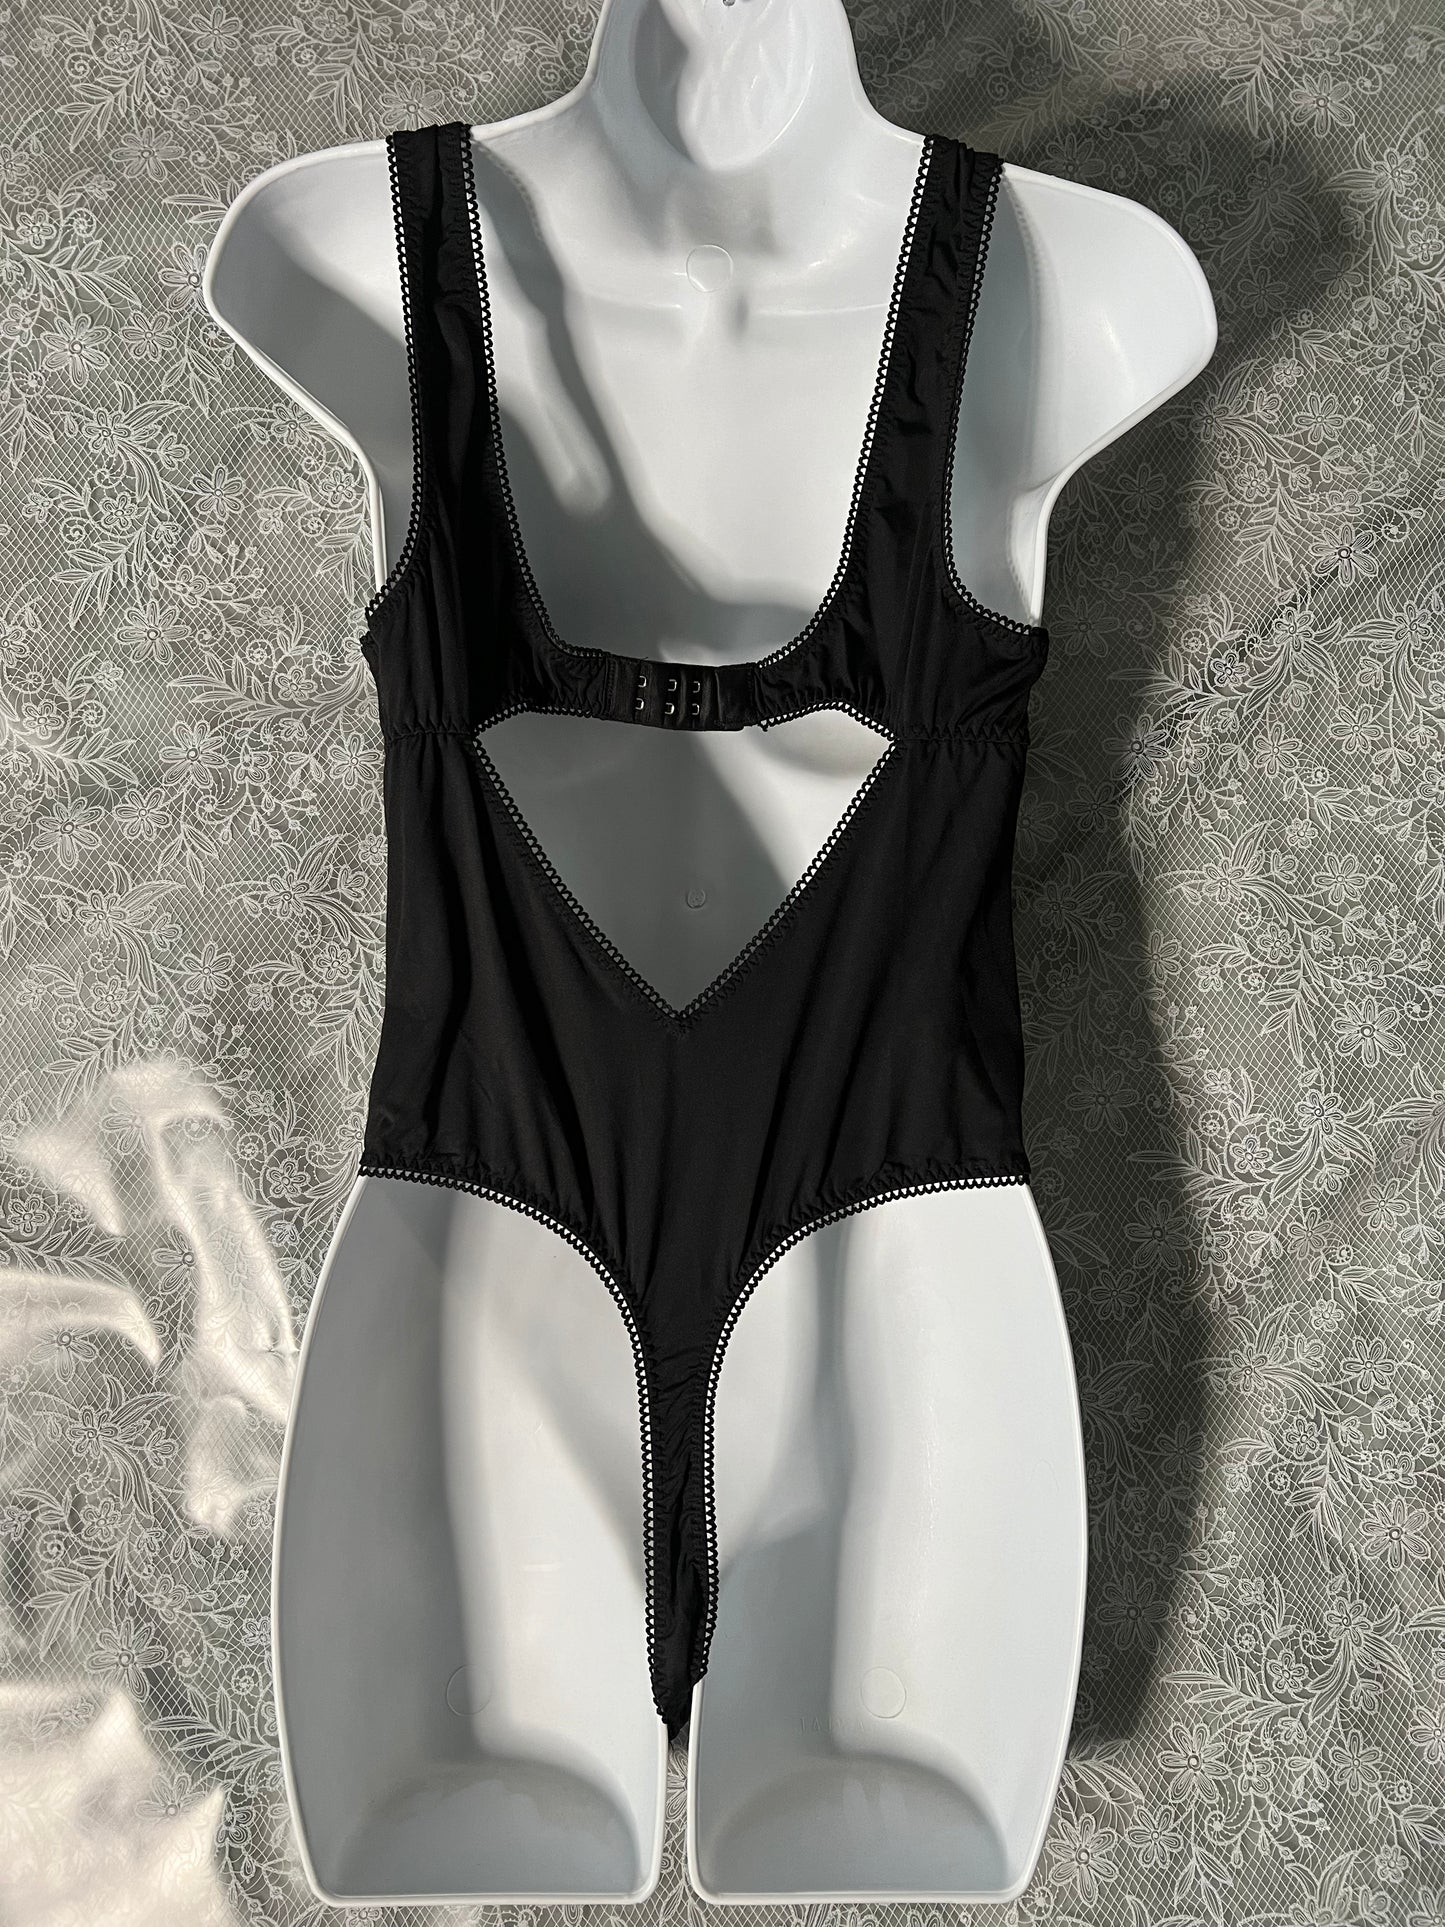 Victoria's Secret - Bodysuit Lingerie NWOT